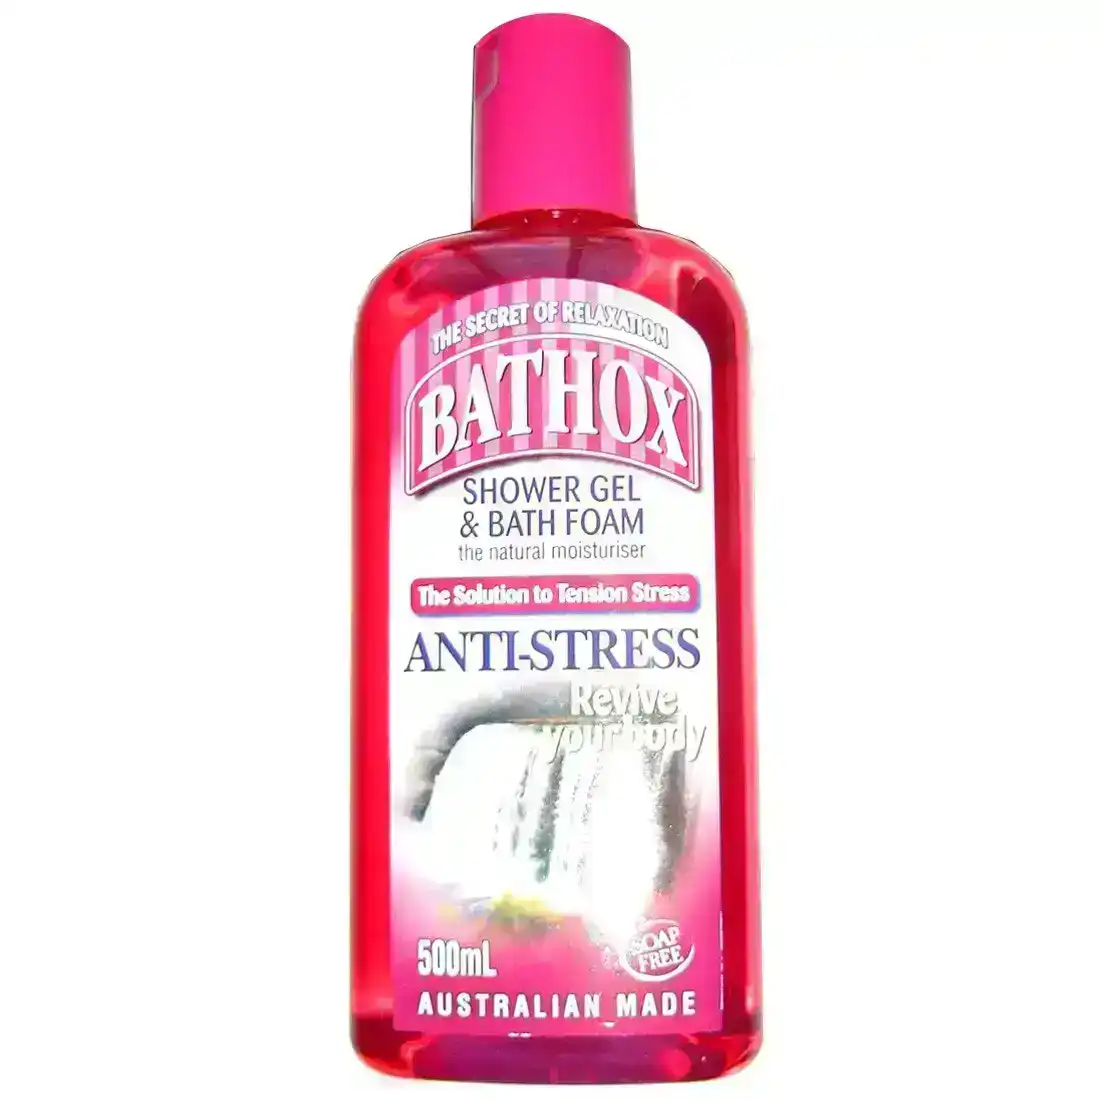 Bathox Shower Gel &amp; Bath Foam Anti-Stress 500ml